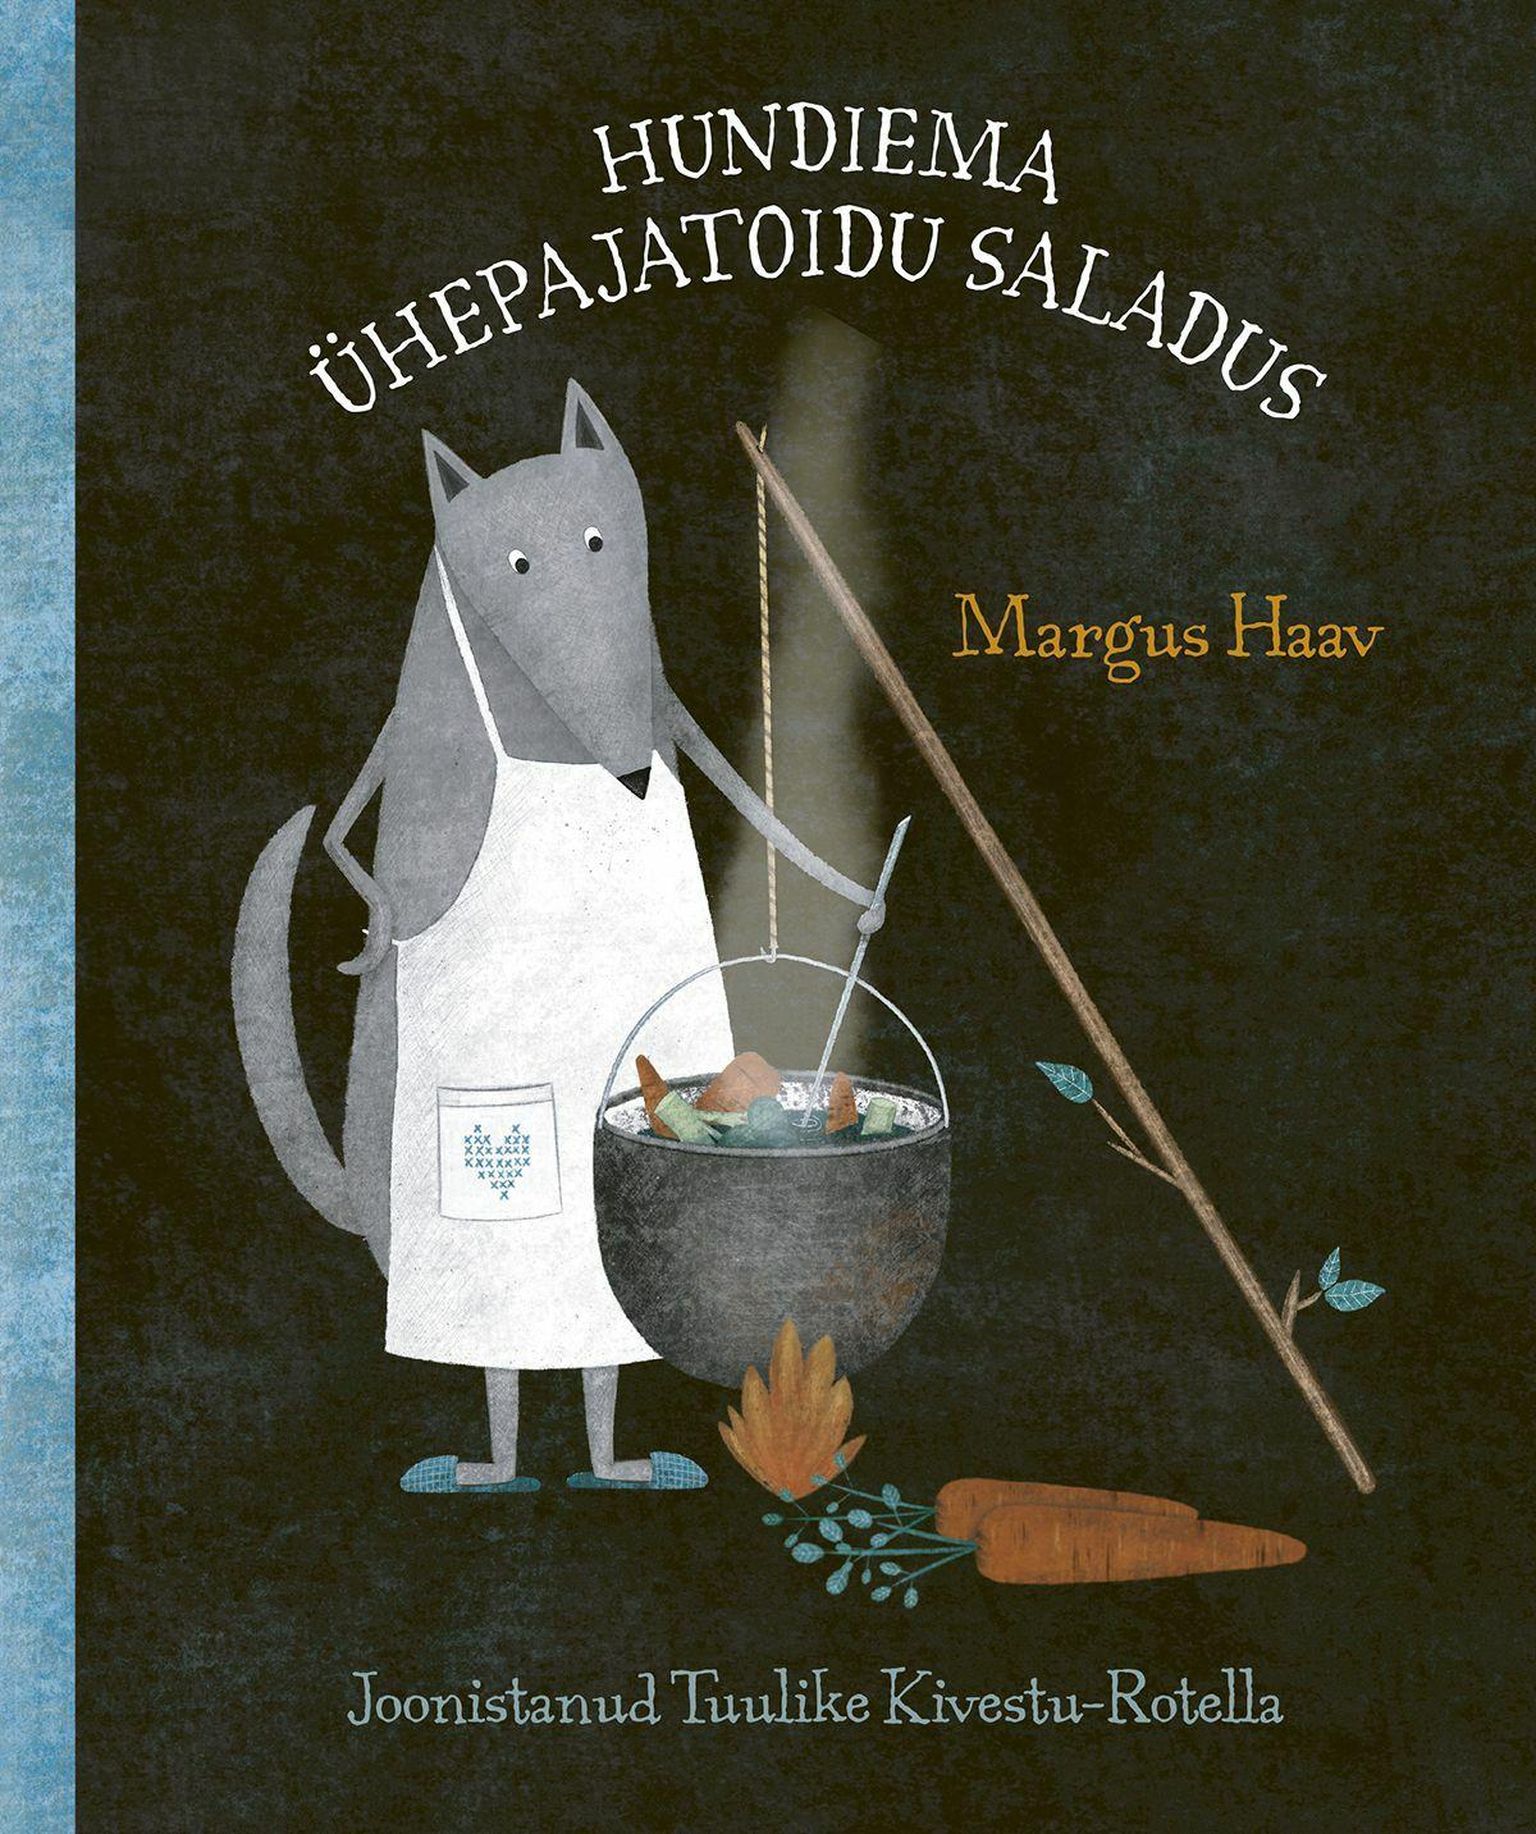 Margus Haava lasteraamatust leiab lõbusaid loomajutte. Autor esitleb raamatut kolmapäeval linnaraamatukogus.